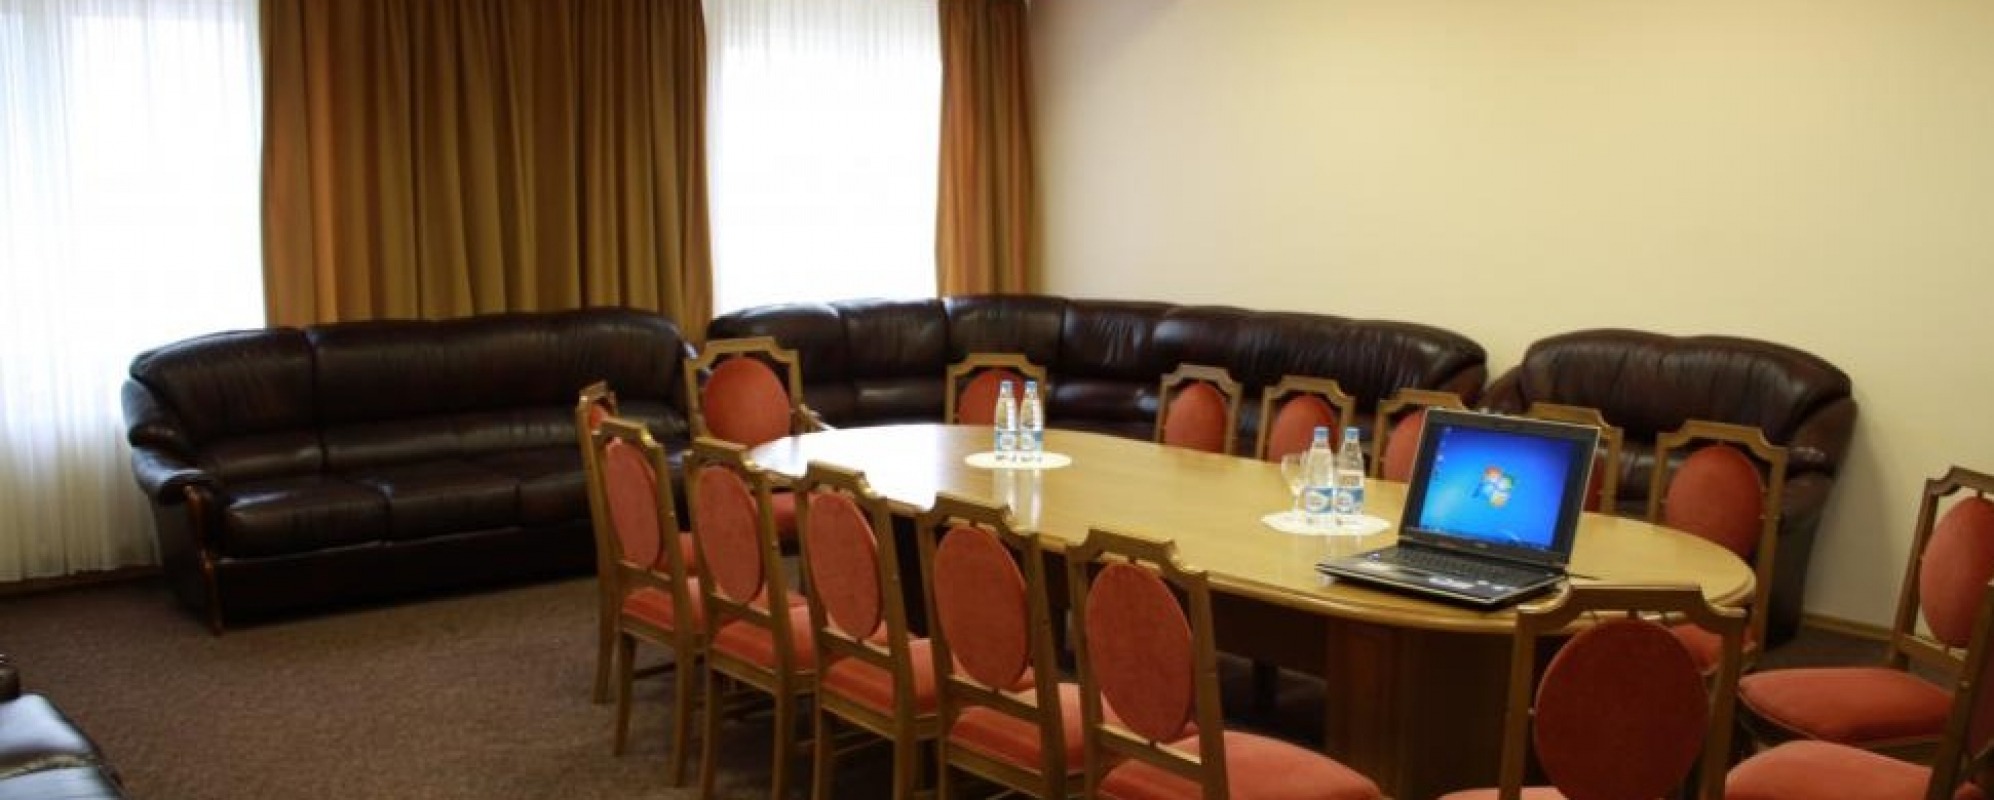 Фотографии комнаты для переговоров Зал переговоров 1